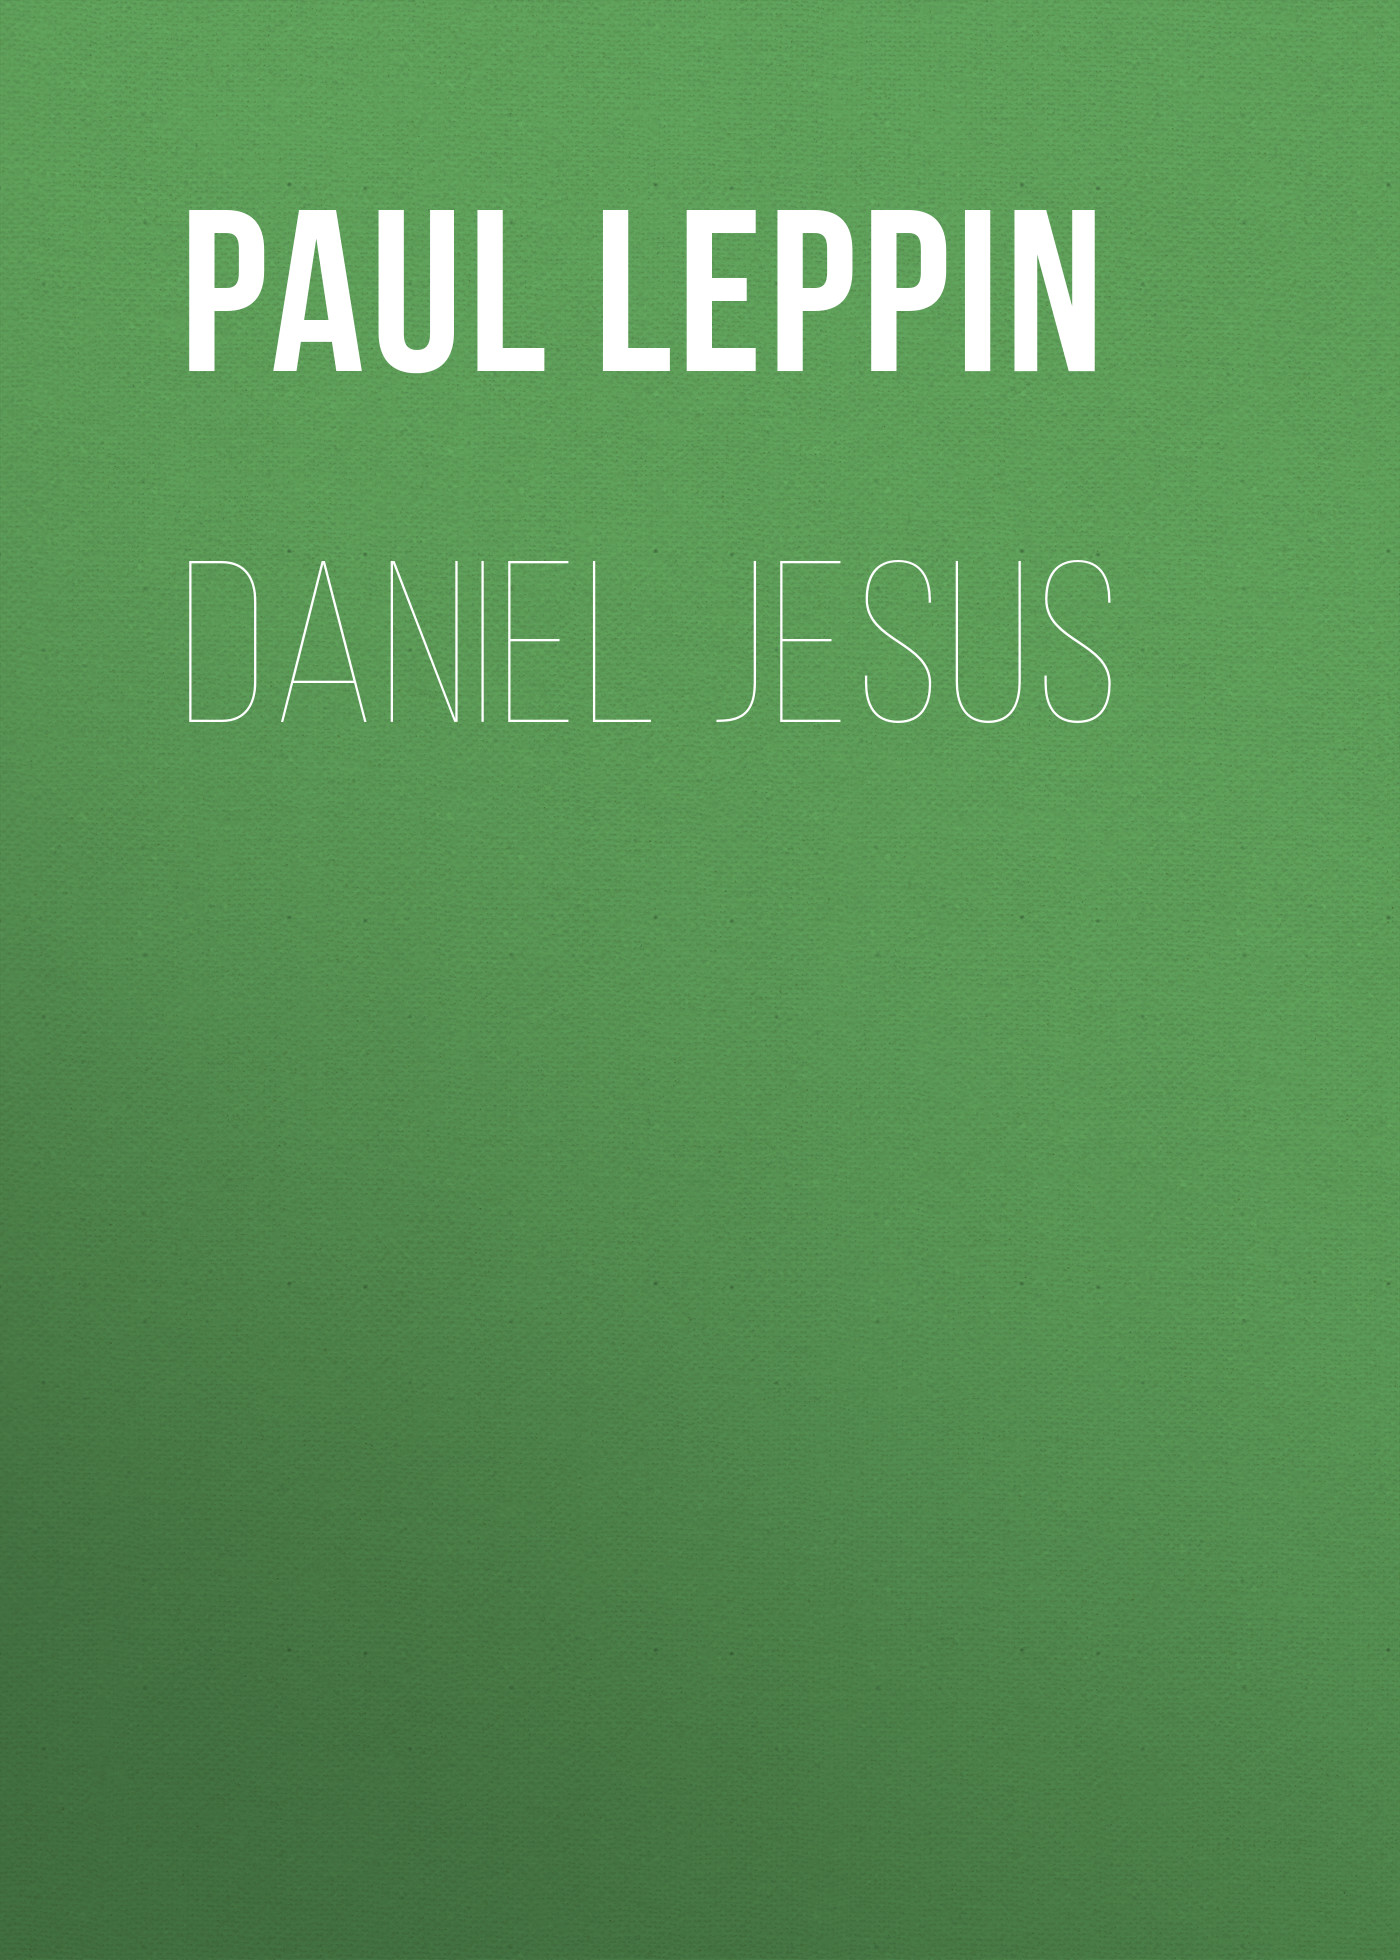 Книга Daniel Jesus из серии , созданная Paul Leppin, может относится к жанру Зарубежная классика. Стоимость электронной книги Daniel Jesus с идентификатором 48631836 составляет 0 руб.